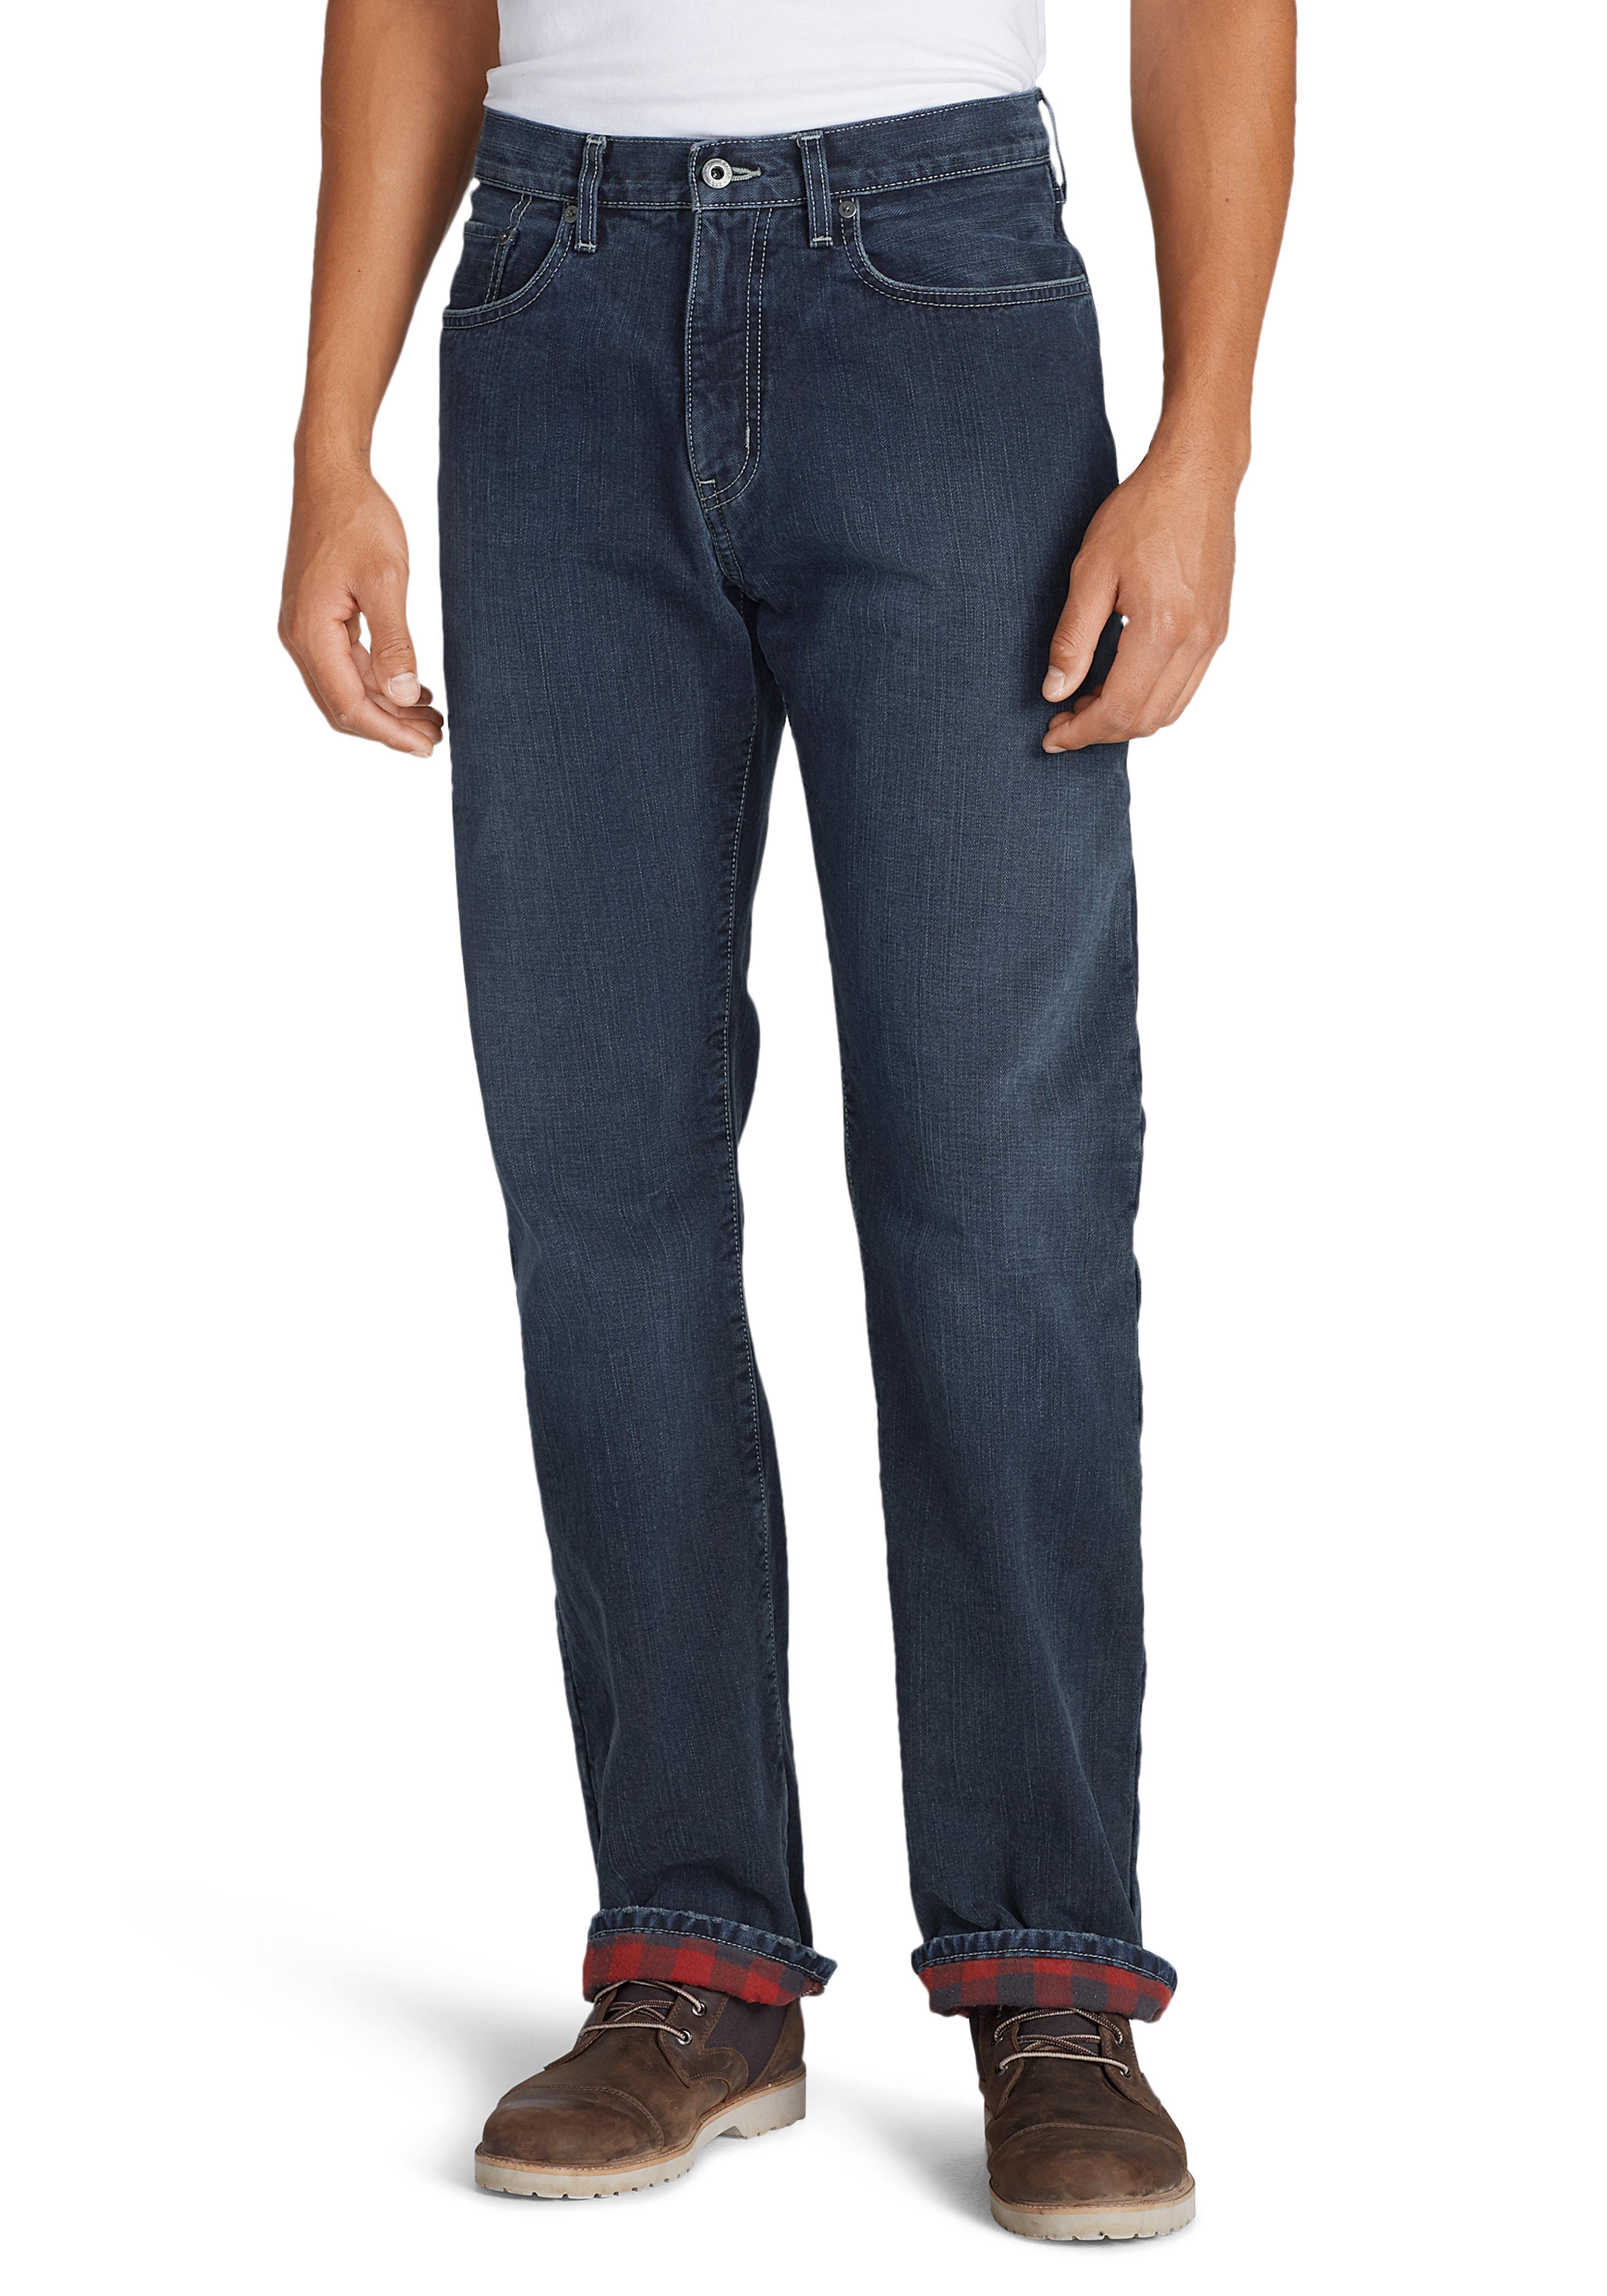 Eddie Bauer 5-Pocket-Jeans Flex mit Flanellfutter - Straight Fit, grau